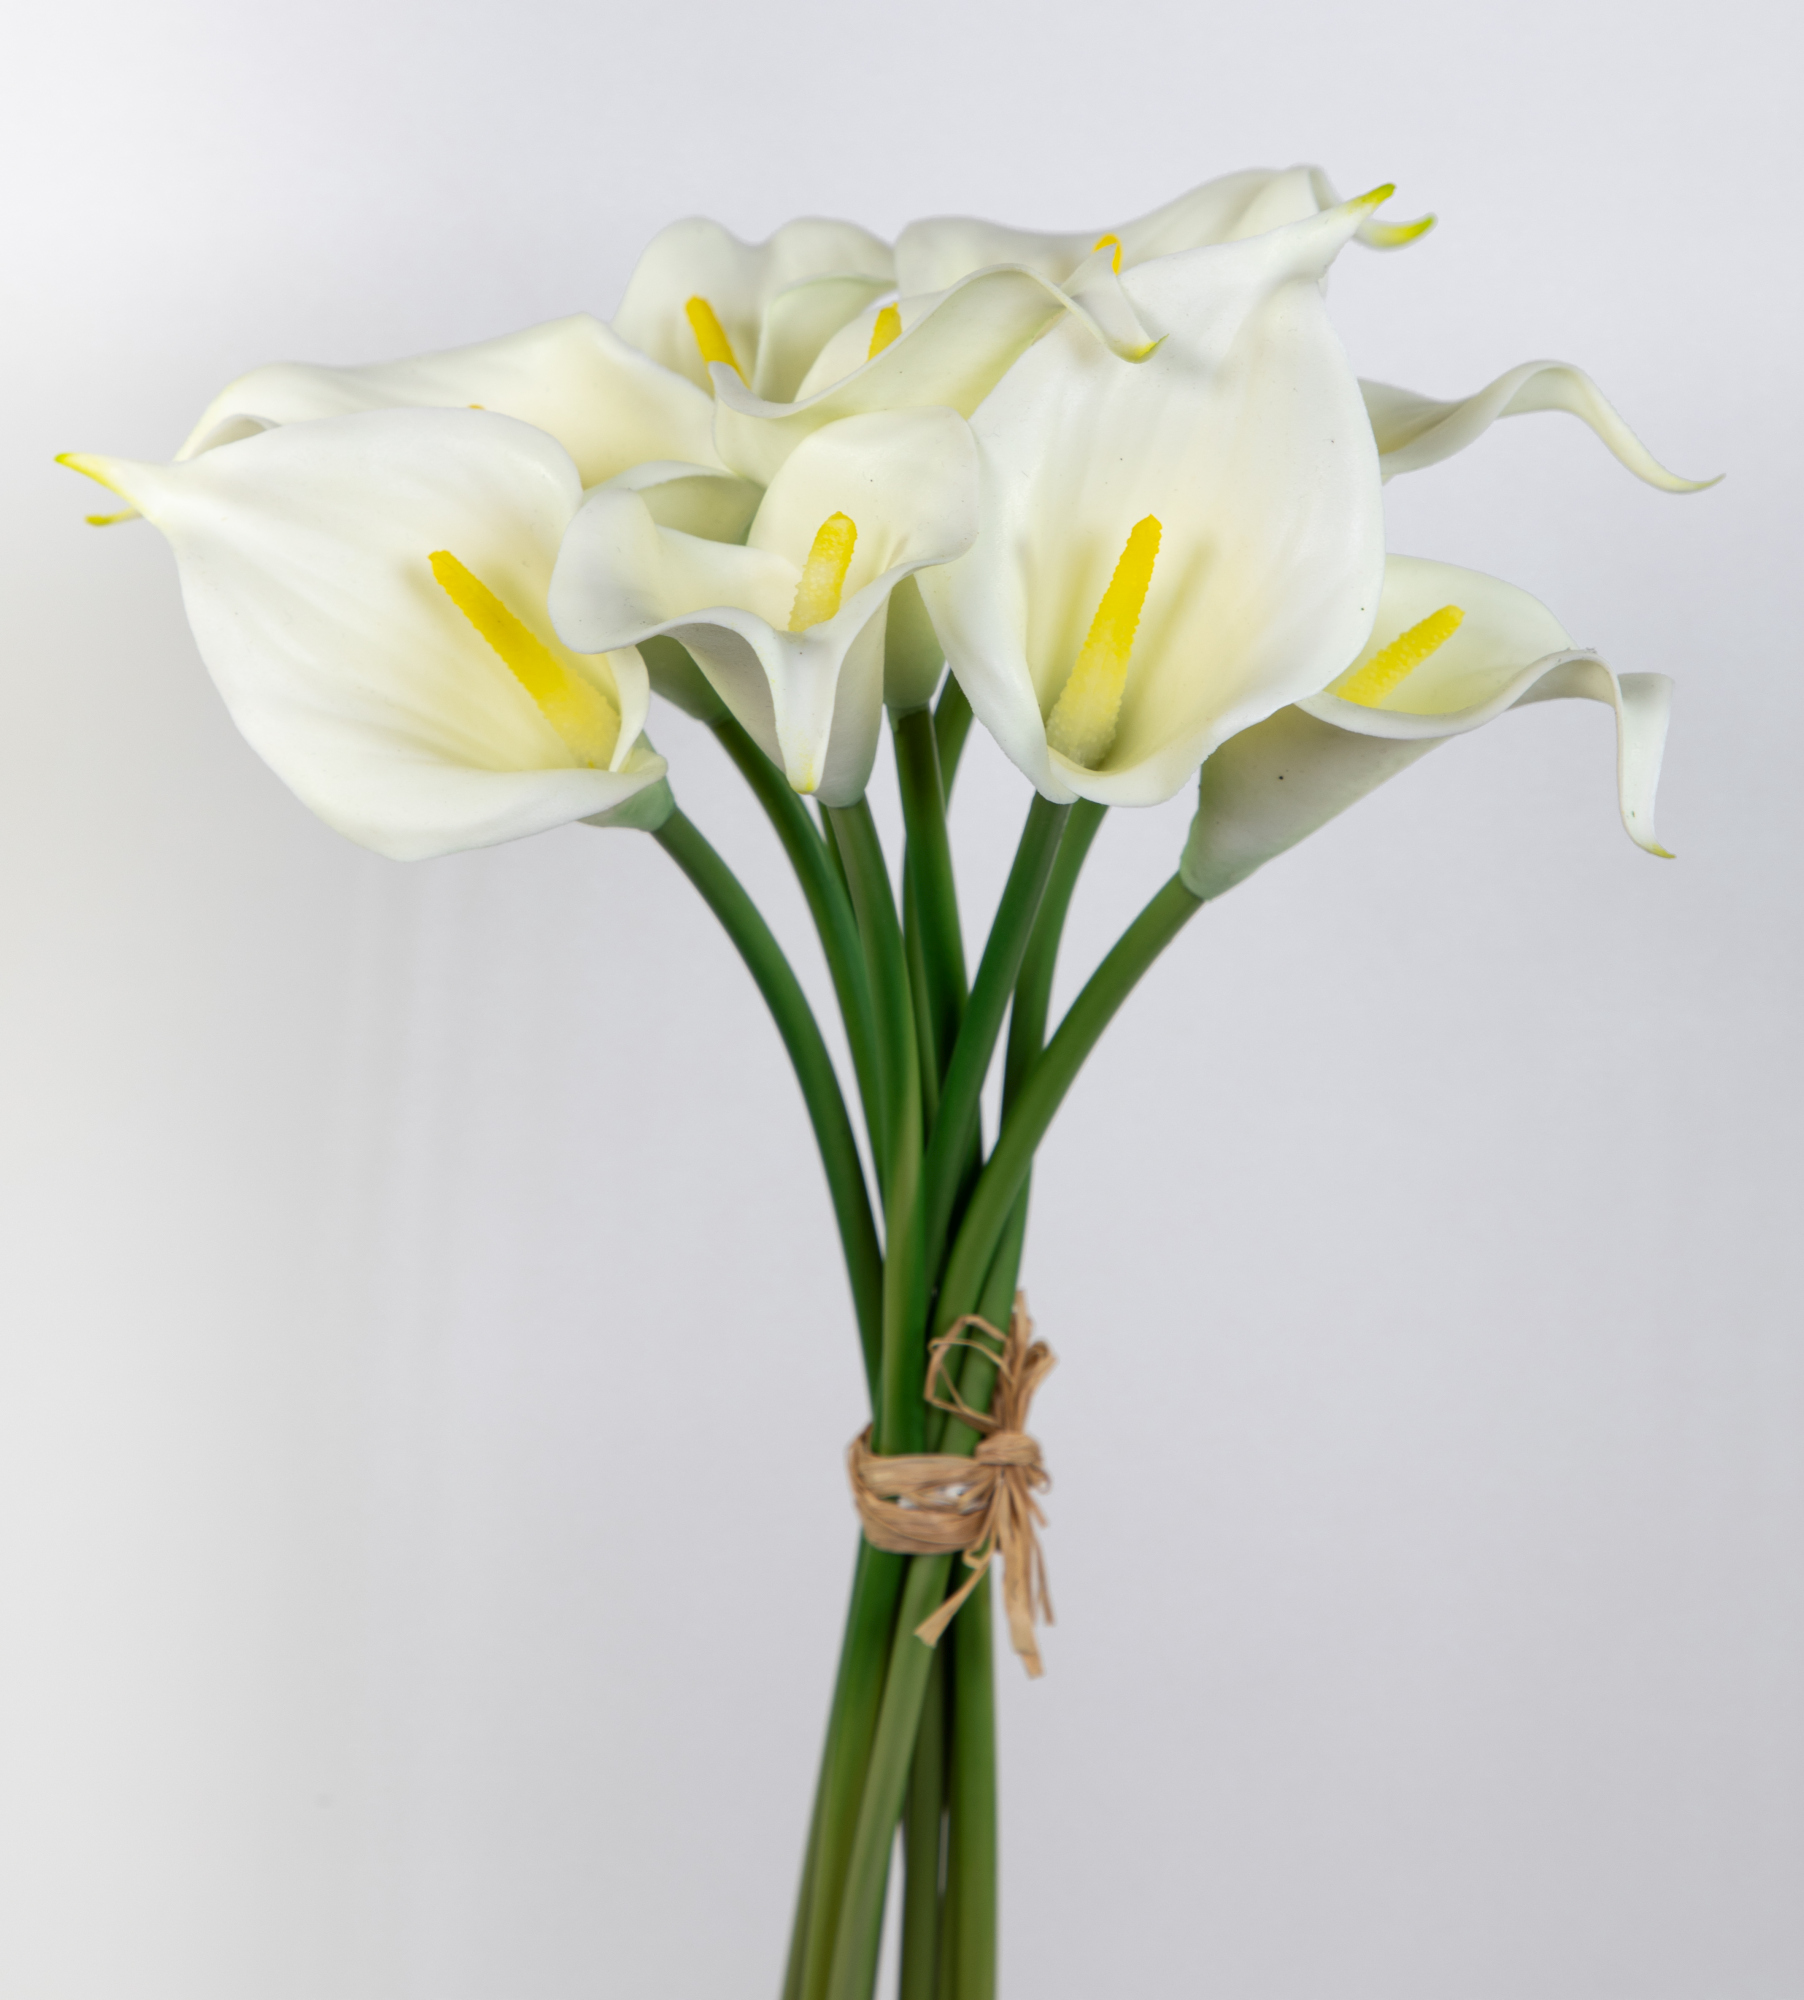 9 Stück Calla Real Touch 34cm weiß-creme FT Kunstblumen künstliche Blumen Kalla Lilie